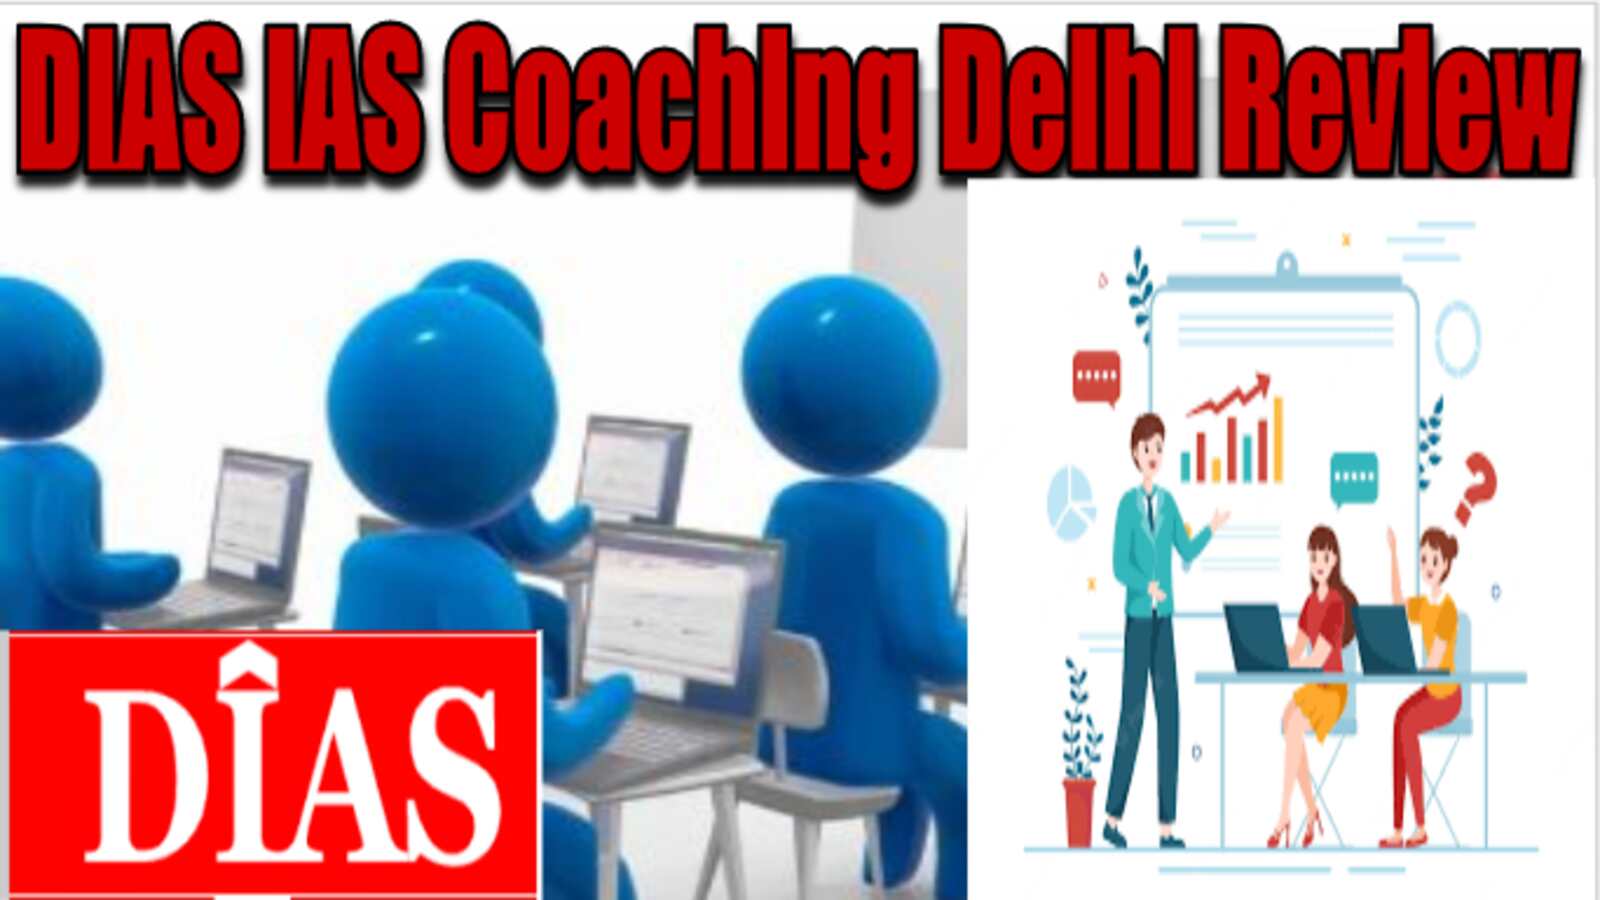 DIAS IAS Coaching institute Delhi Review